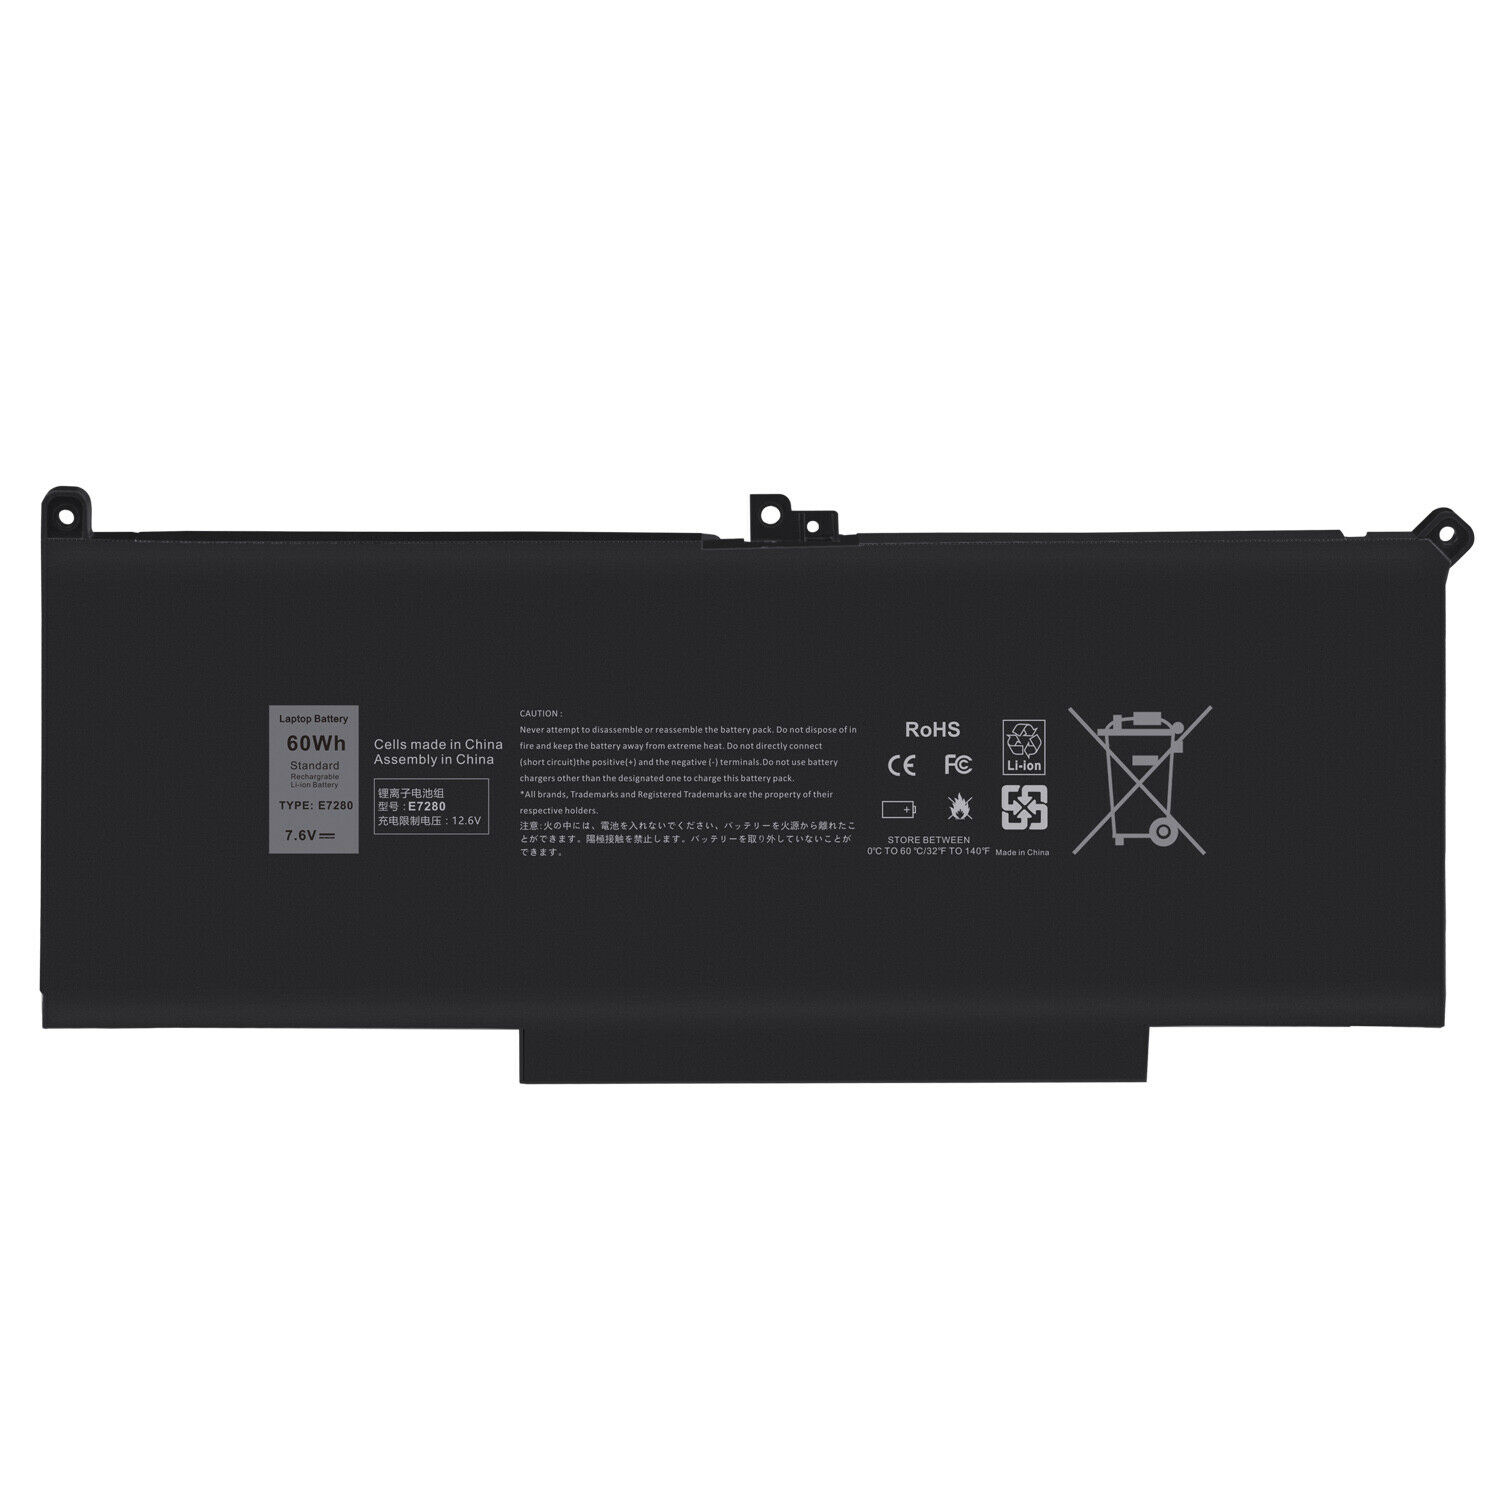 Batería para MYJ96 F3YGT 2X39G Dell Latitude E7290 E7390 E7490 7480 7000(compatible)